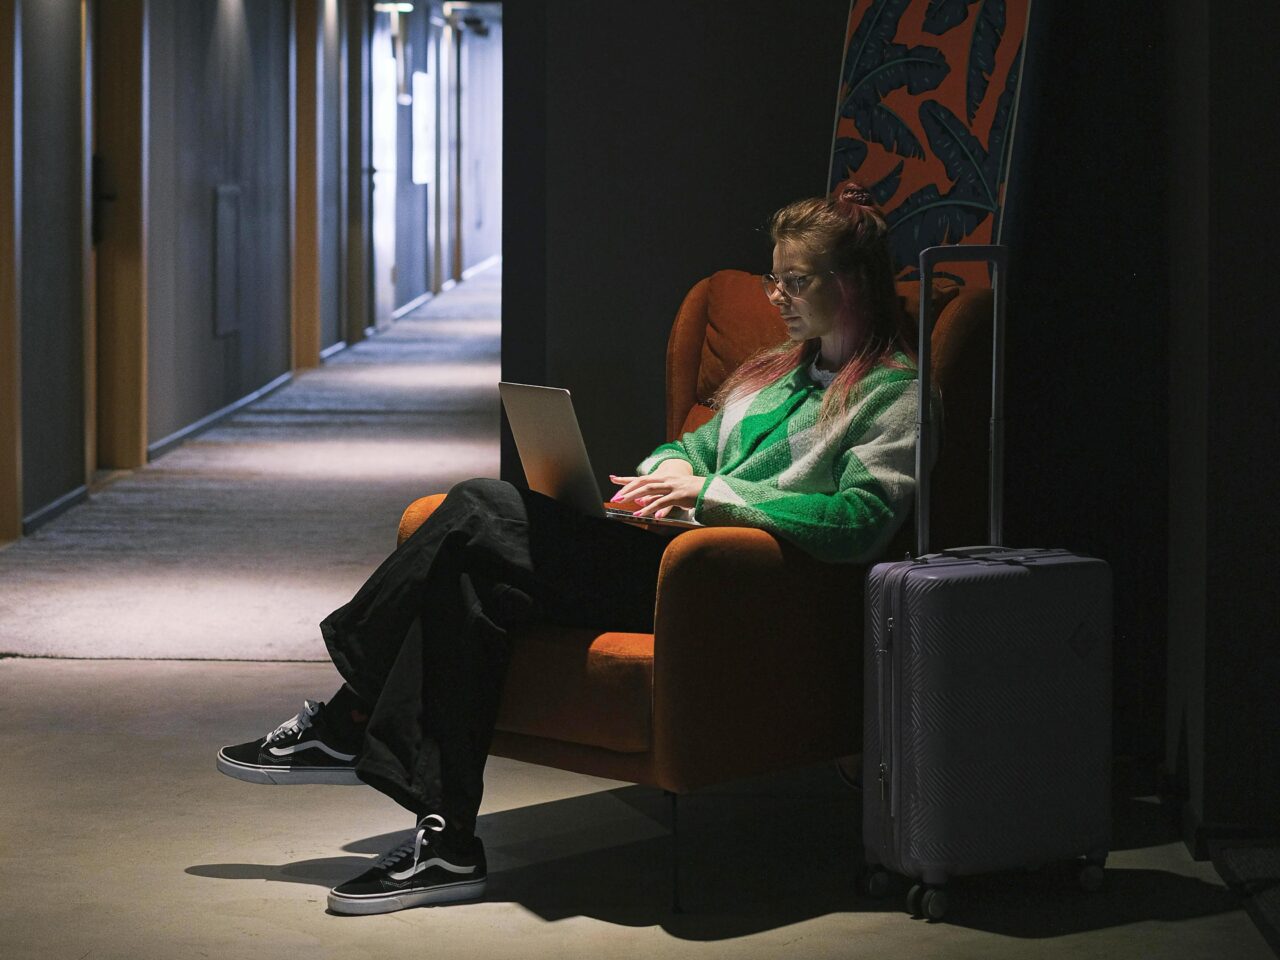 Wi-Fi w hotelu. Kobieta w czerwonym fotelu pracuje na laptopie w ciemnym hotelowym korytarzu, obok niej stoi walizka na kółkach. 